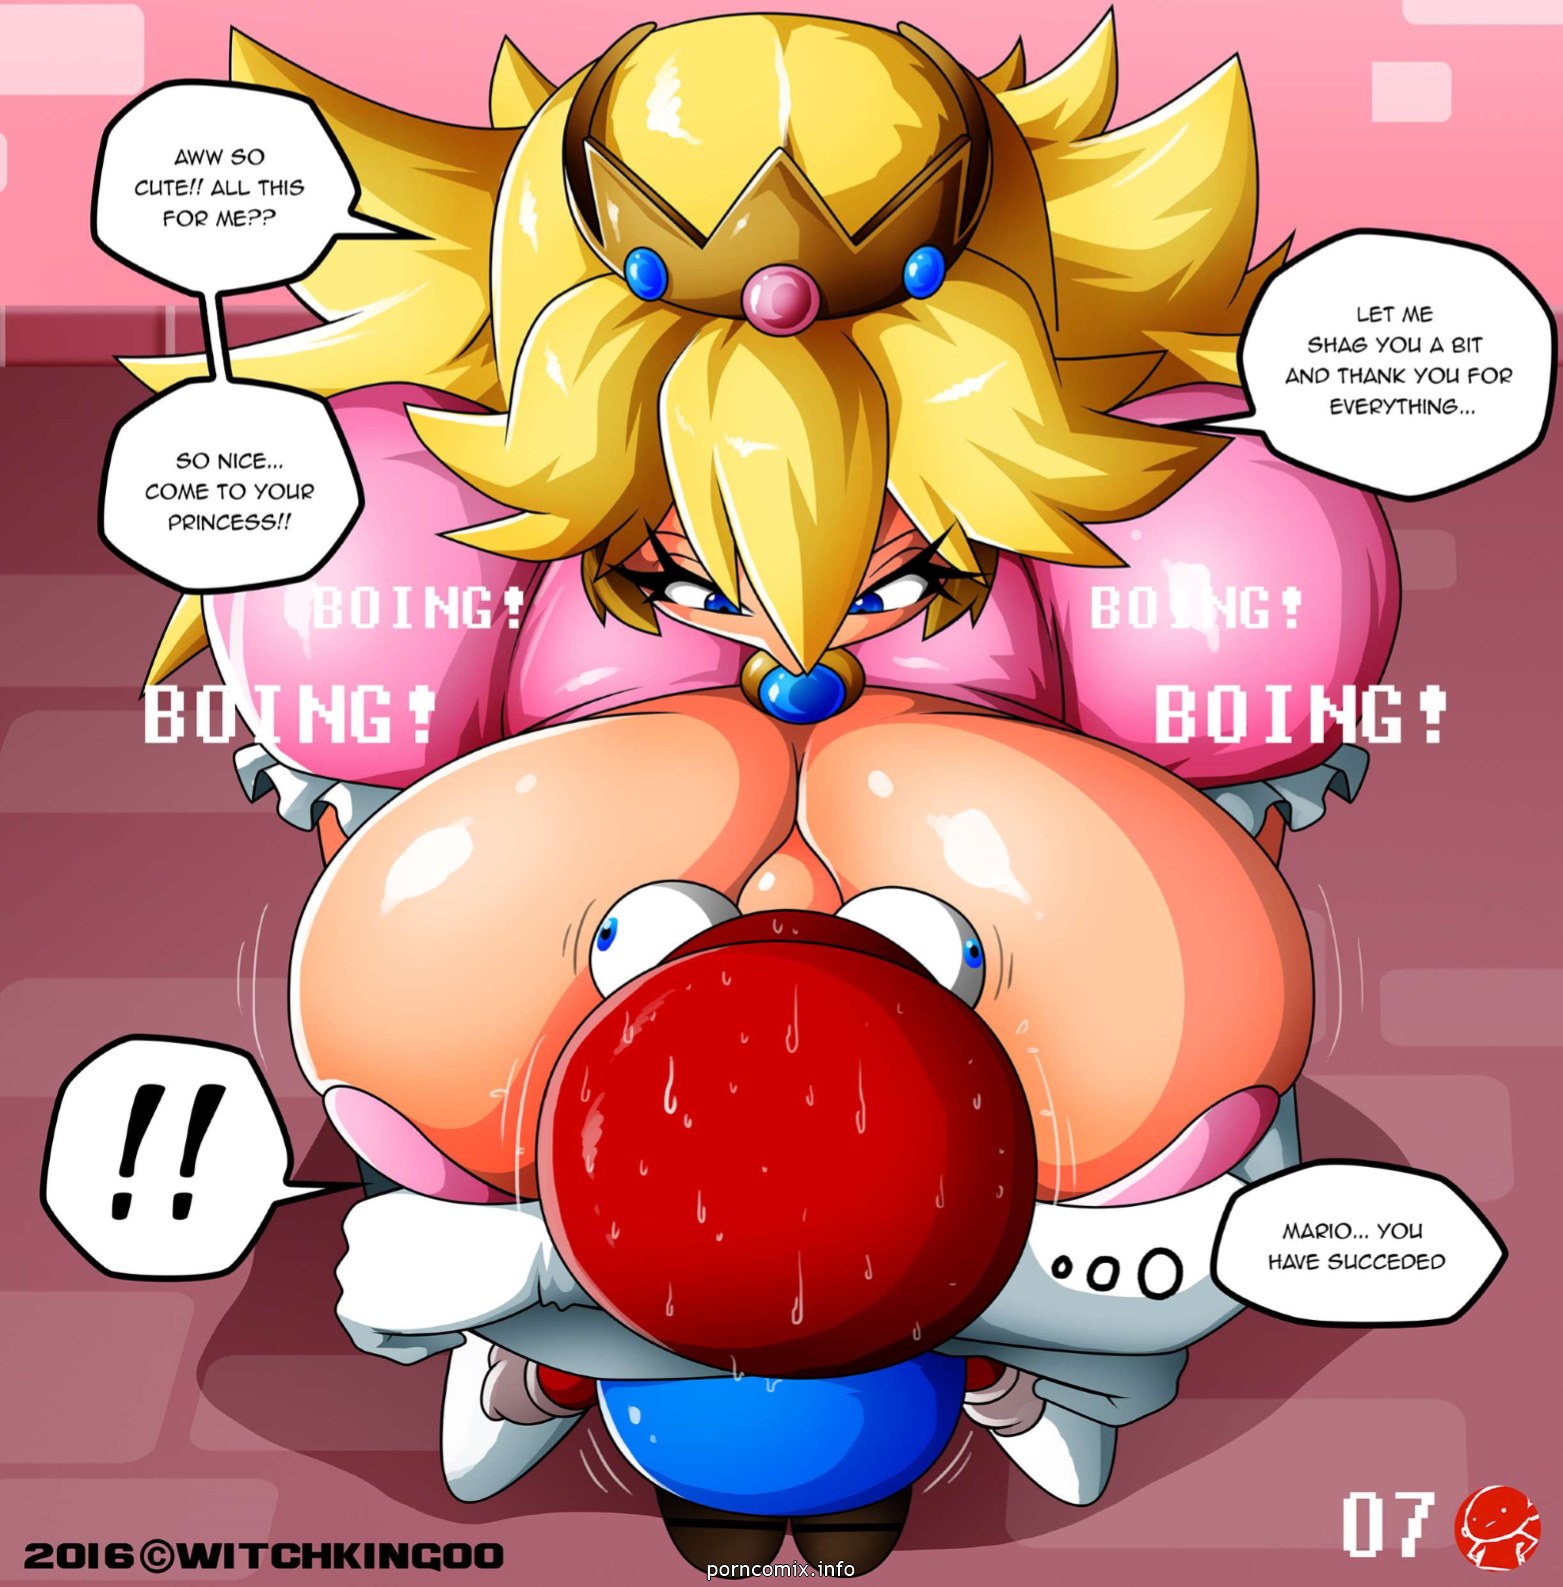 principessa peach grazie si Mario